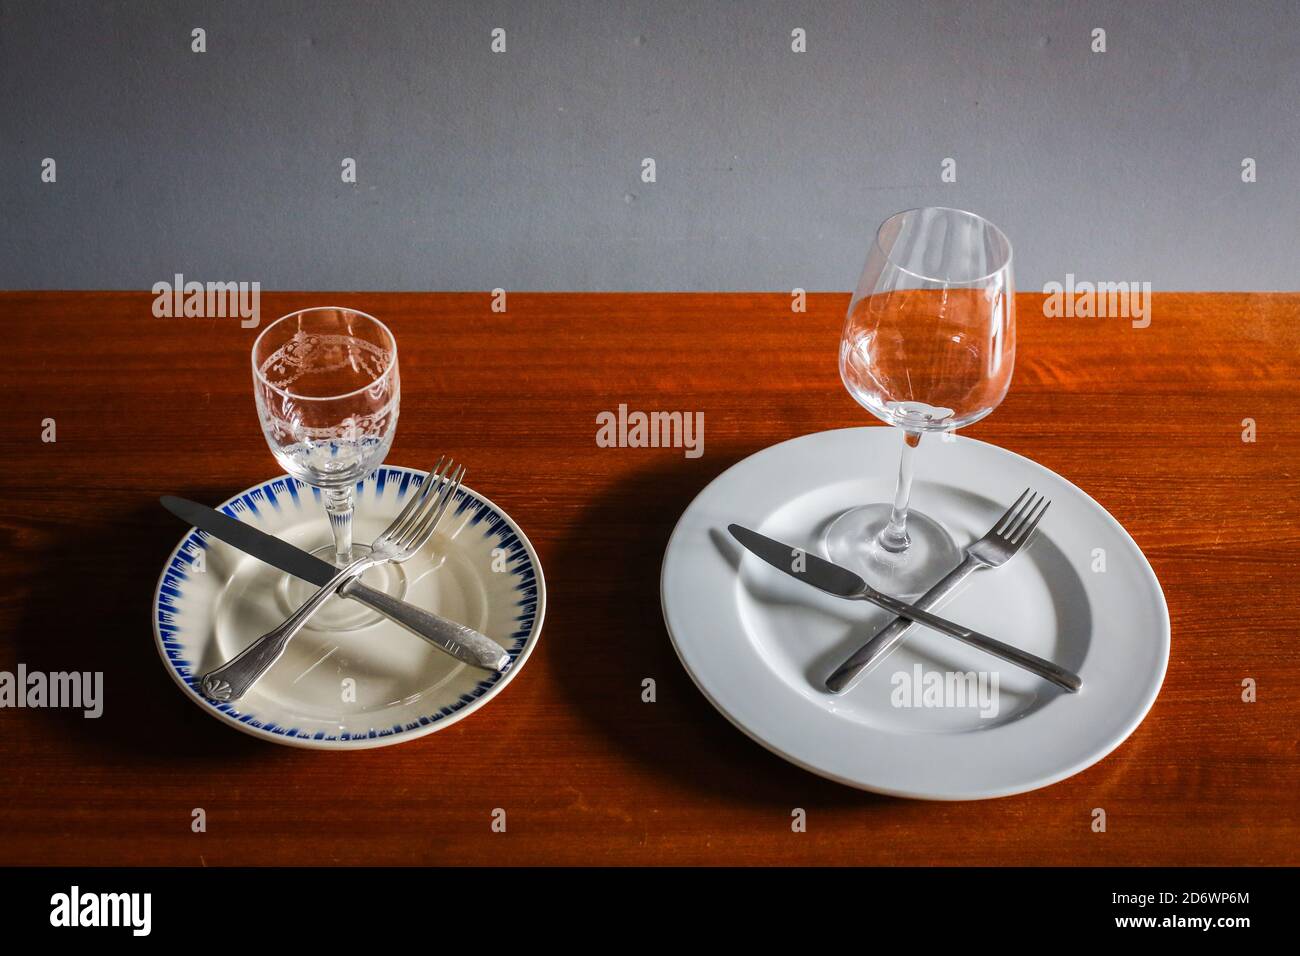 Illustration über die Differenz in der Menge der Lebensmittel, die in den 1950er Jahren und heute für eine Mahlzeit serviert werden, Frankreich. Stockfoto